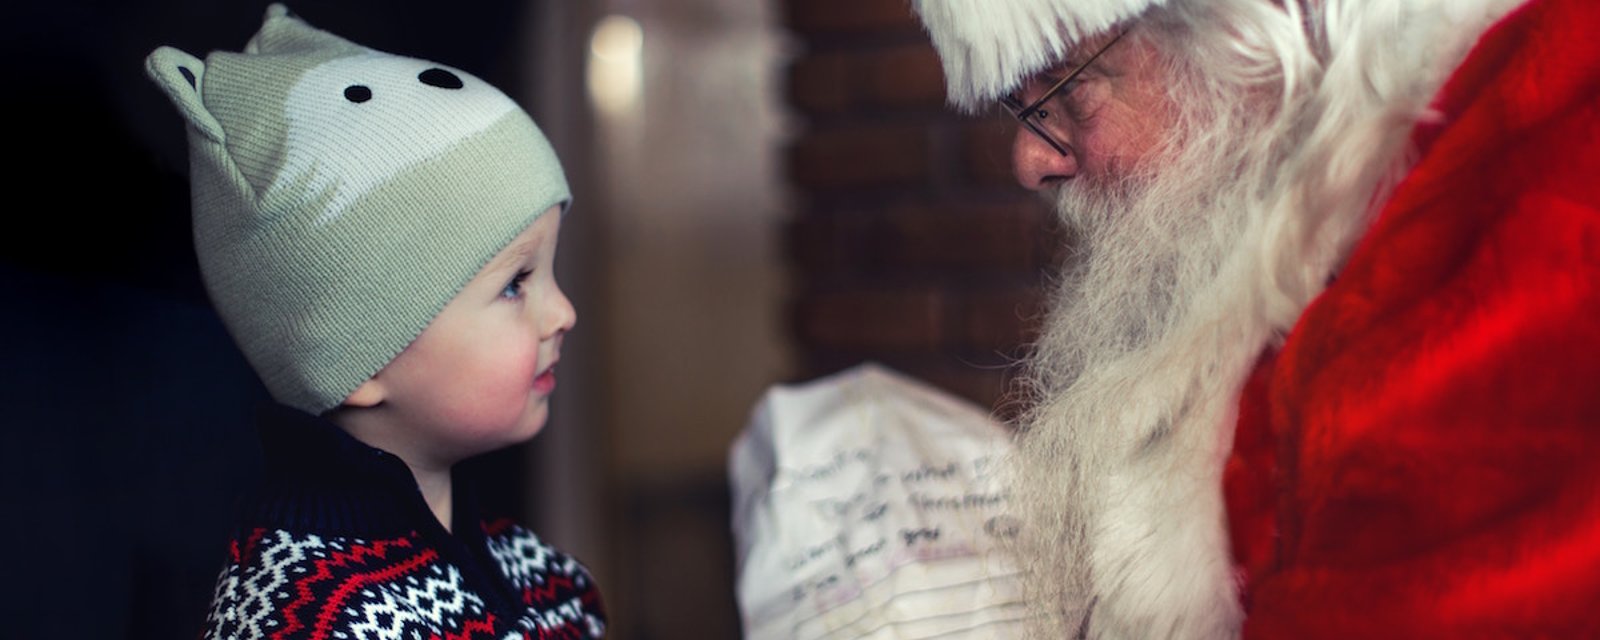 Mentir aux enfants sur le père Noël peut causer plus de tort que de bien, selon certains experts